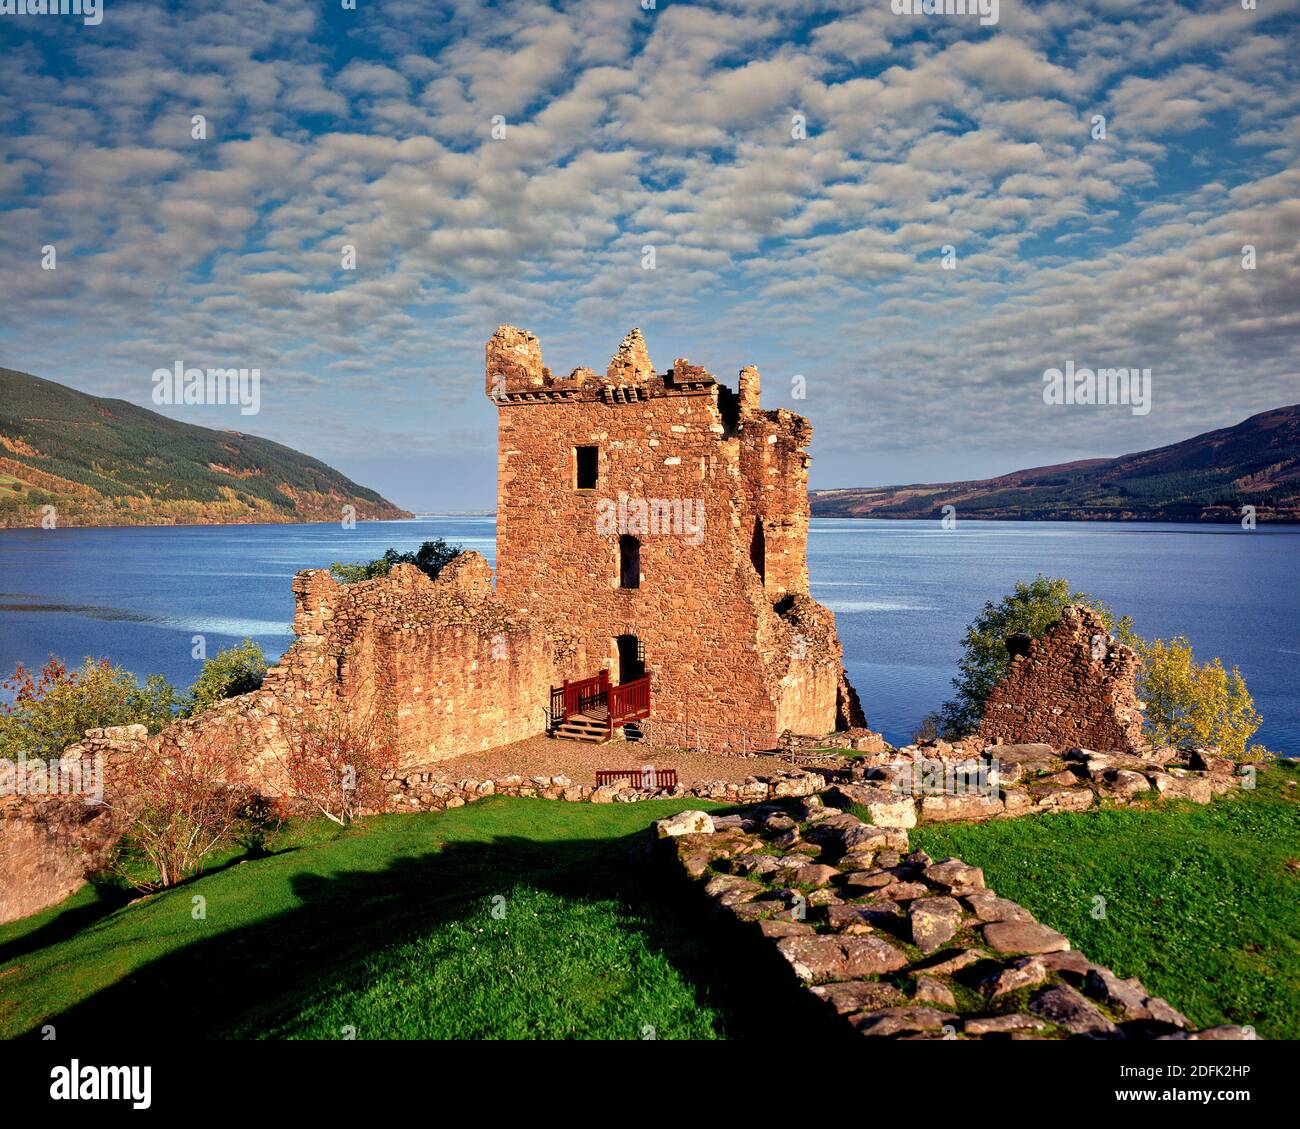 GB - SCOZIA: Castello di Urquhart che domina Loch Ness Foto Stock